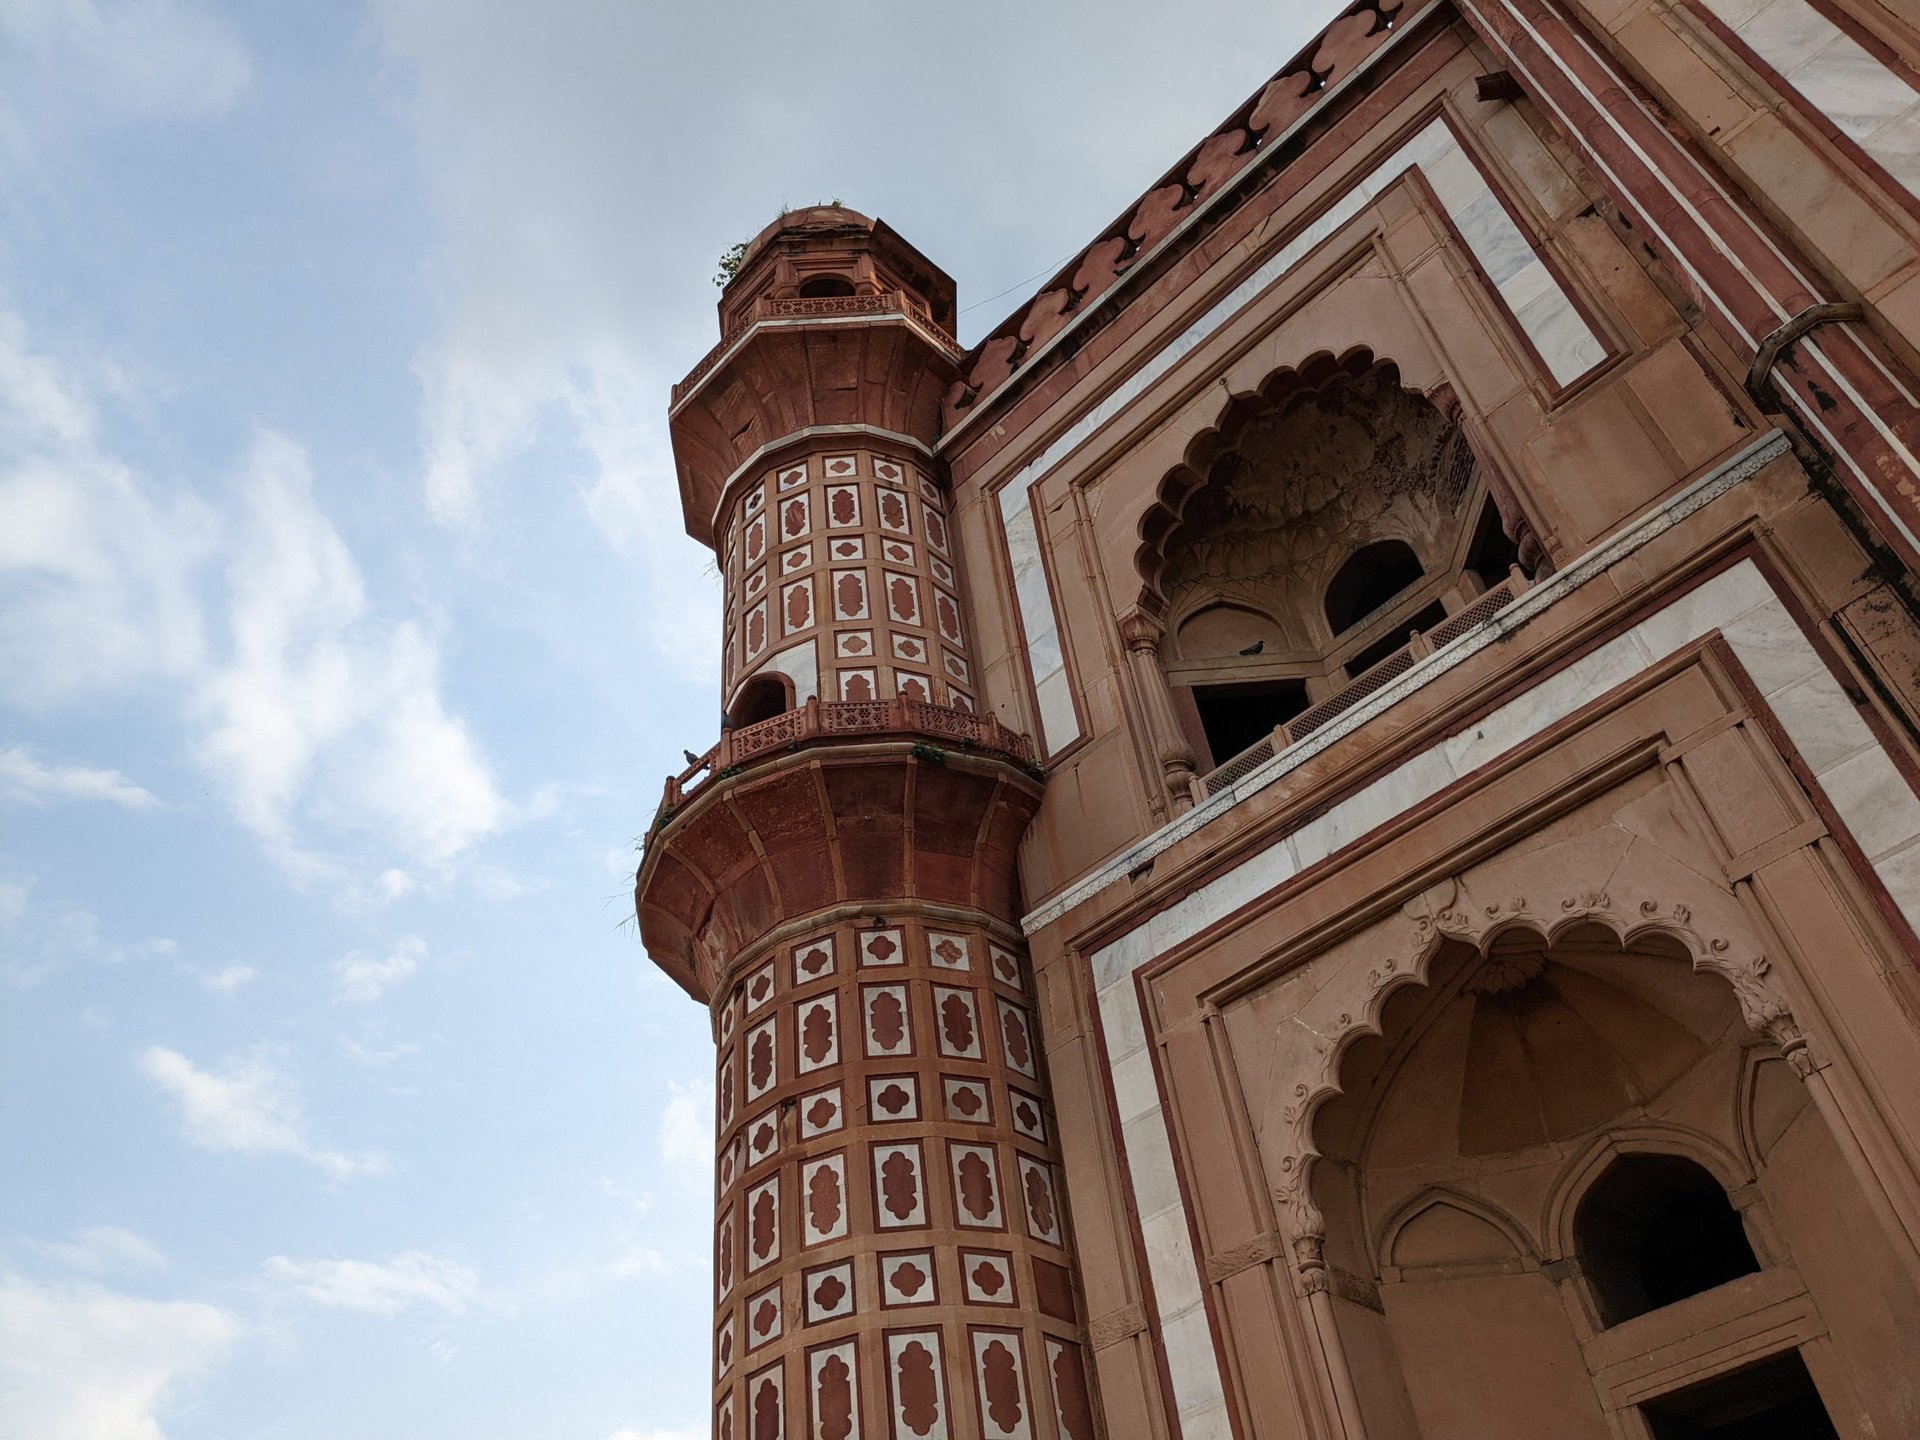 Pixel 6a shot of a minaret